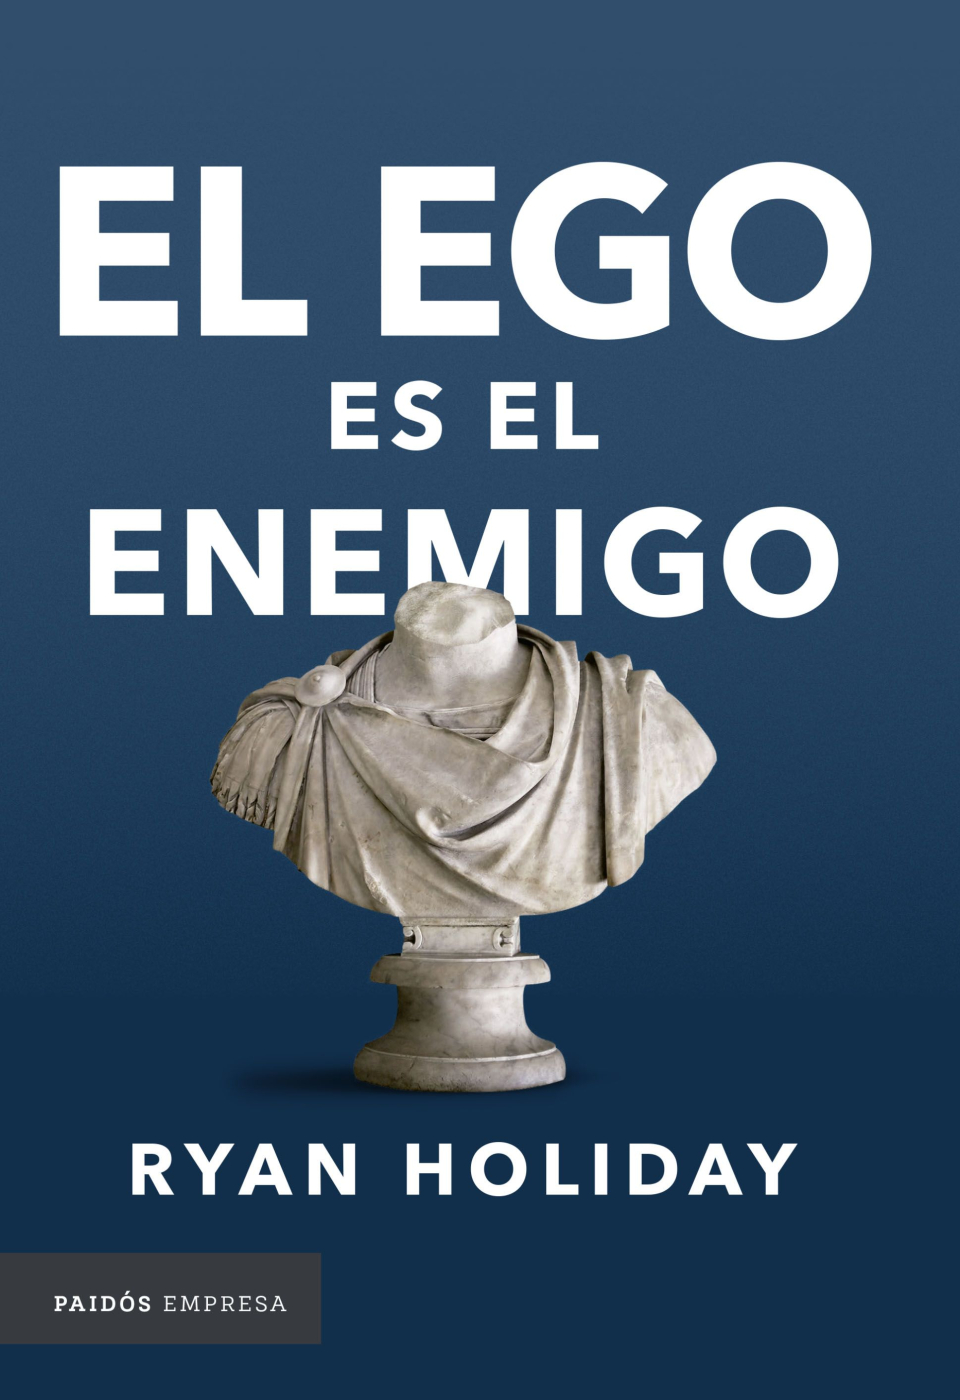 Libro: “El ego es el enemigo”